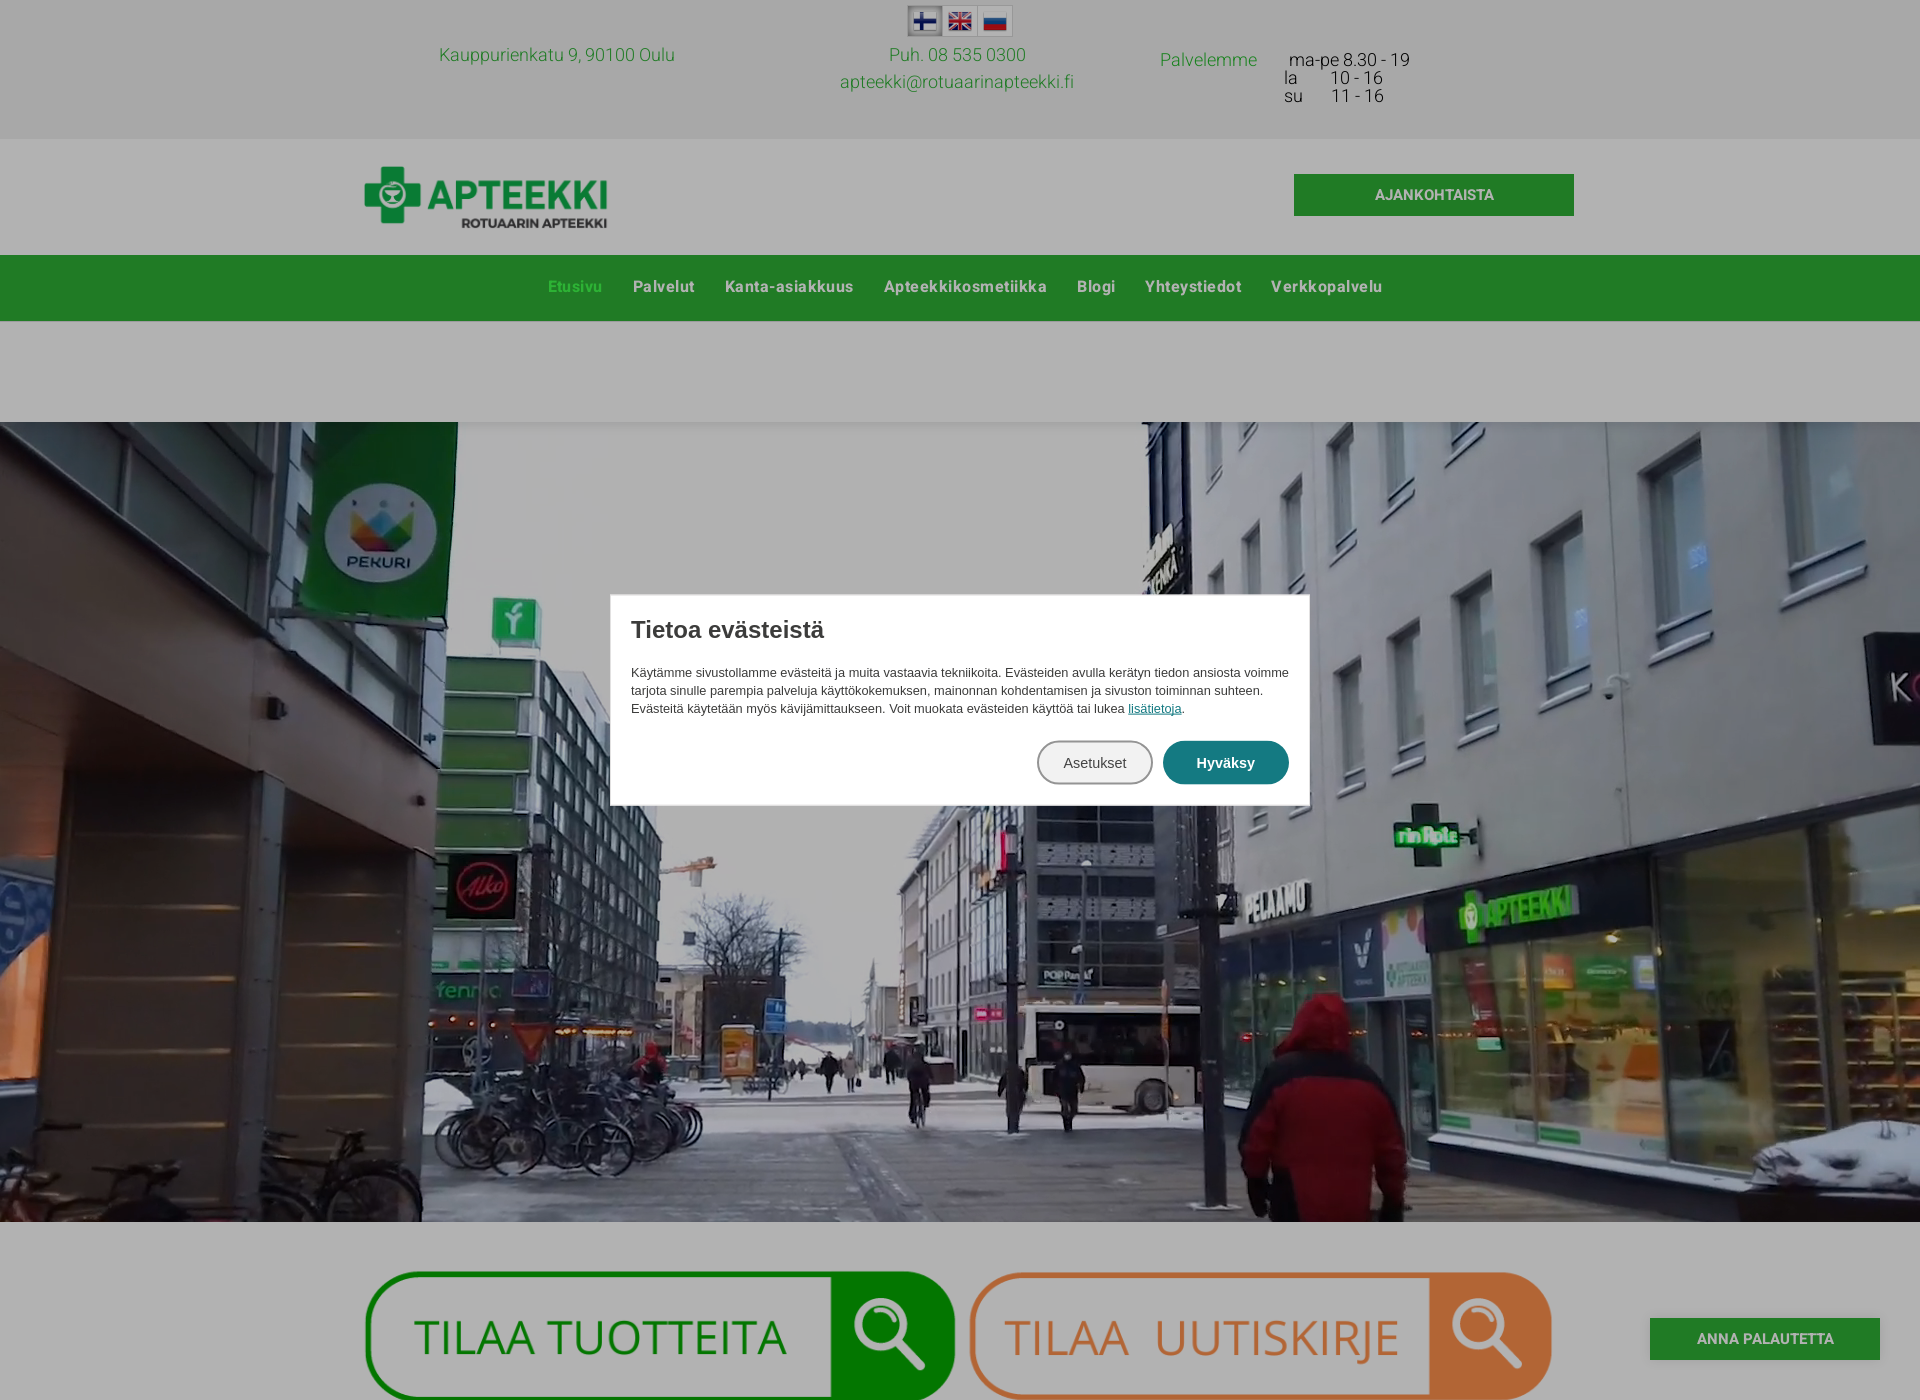 Skärmdump för oulunapteekki.fi